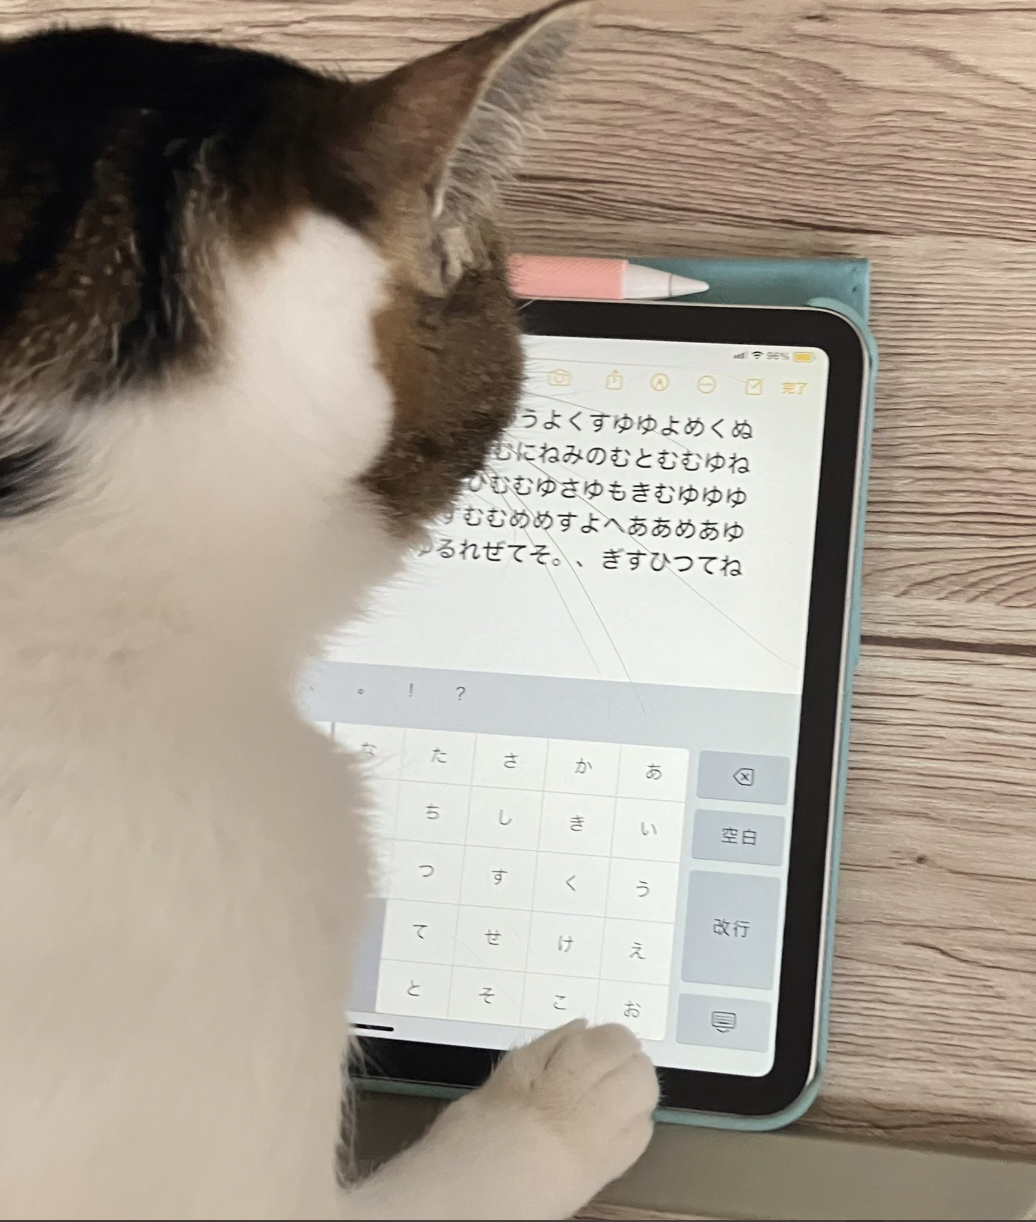 タブレットを見つめる猫が画面上で日本語の文字をタイプしている様子。